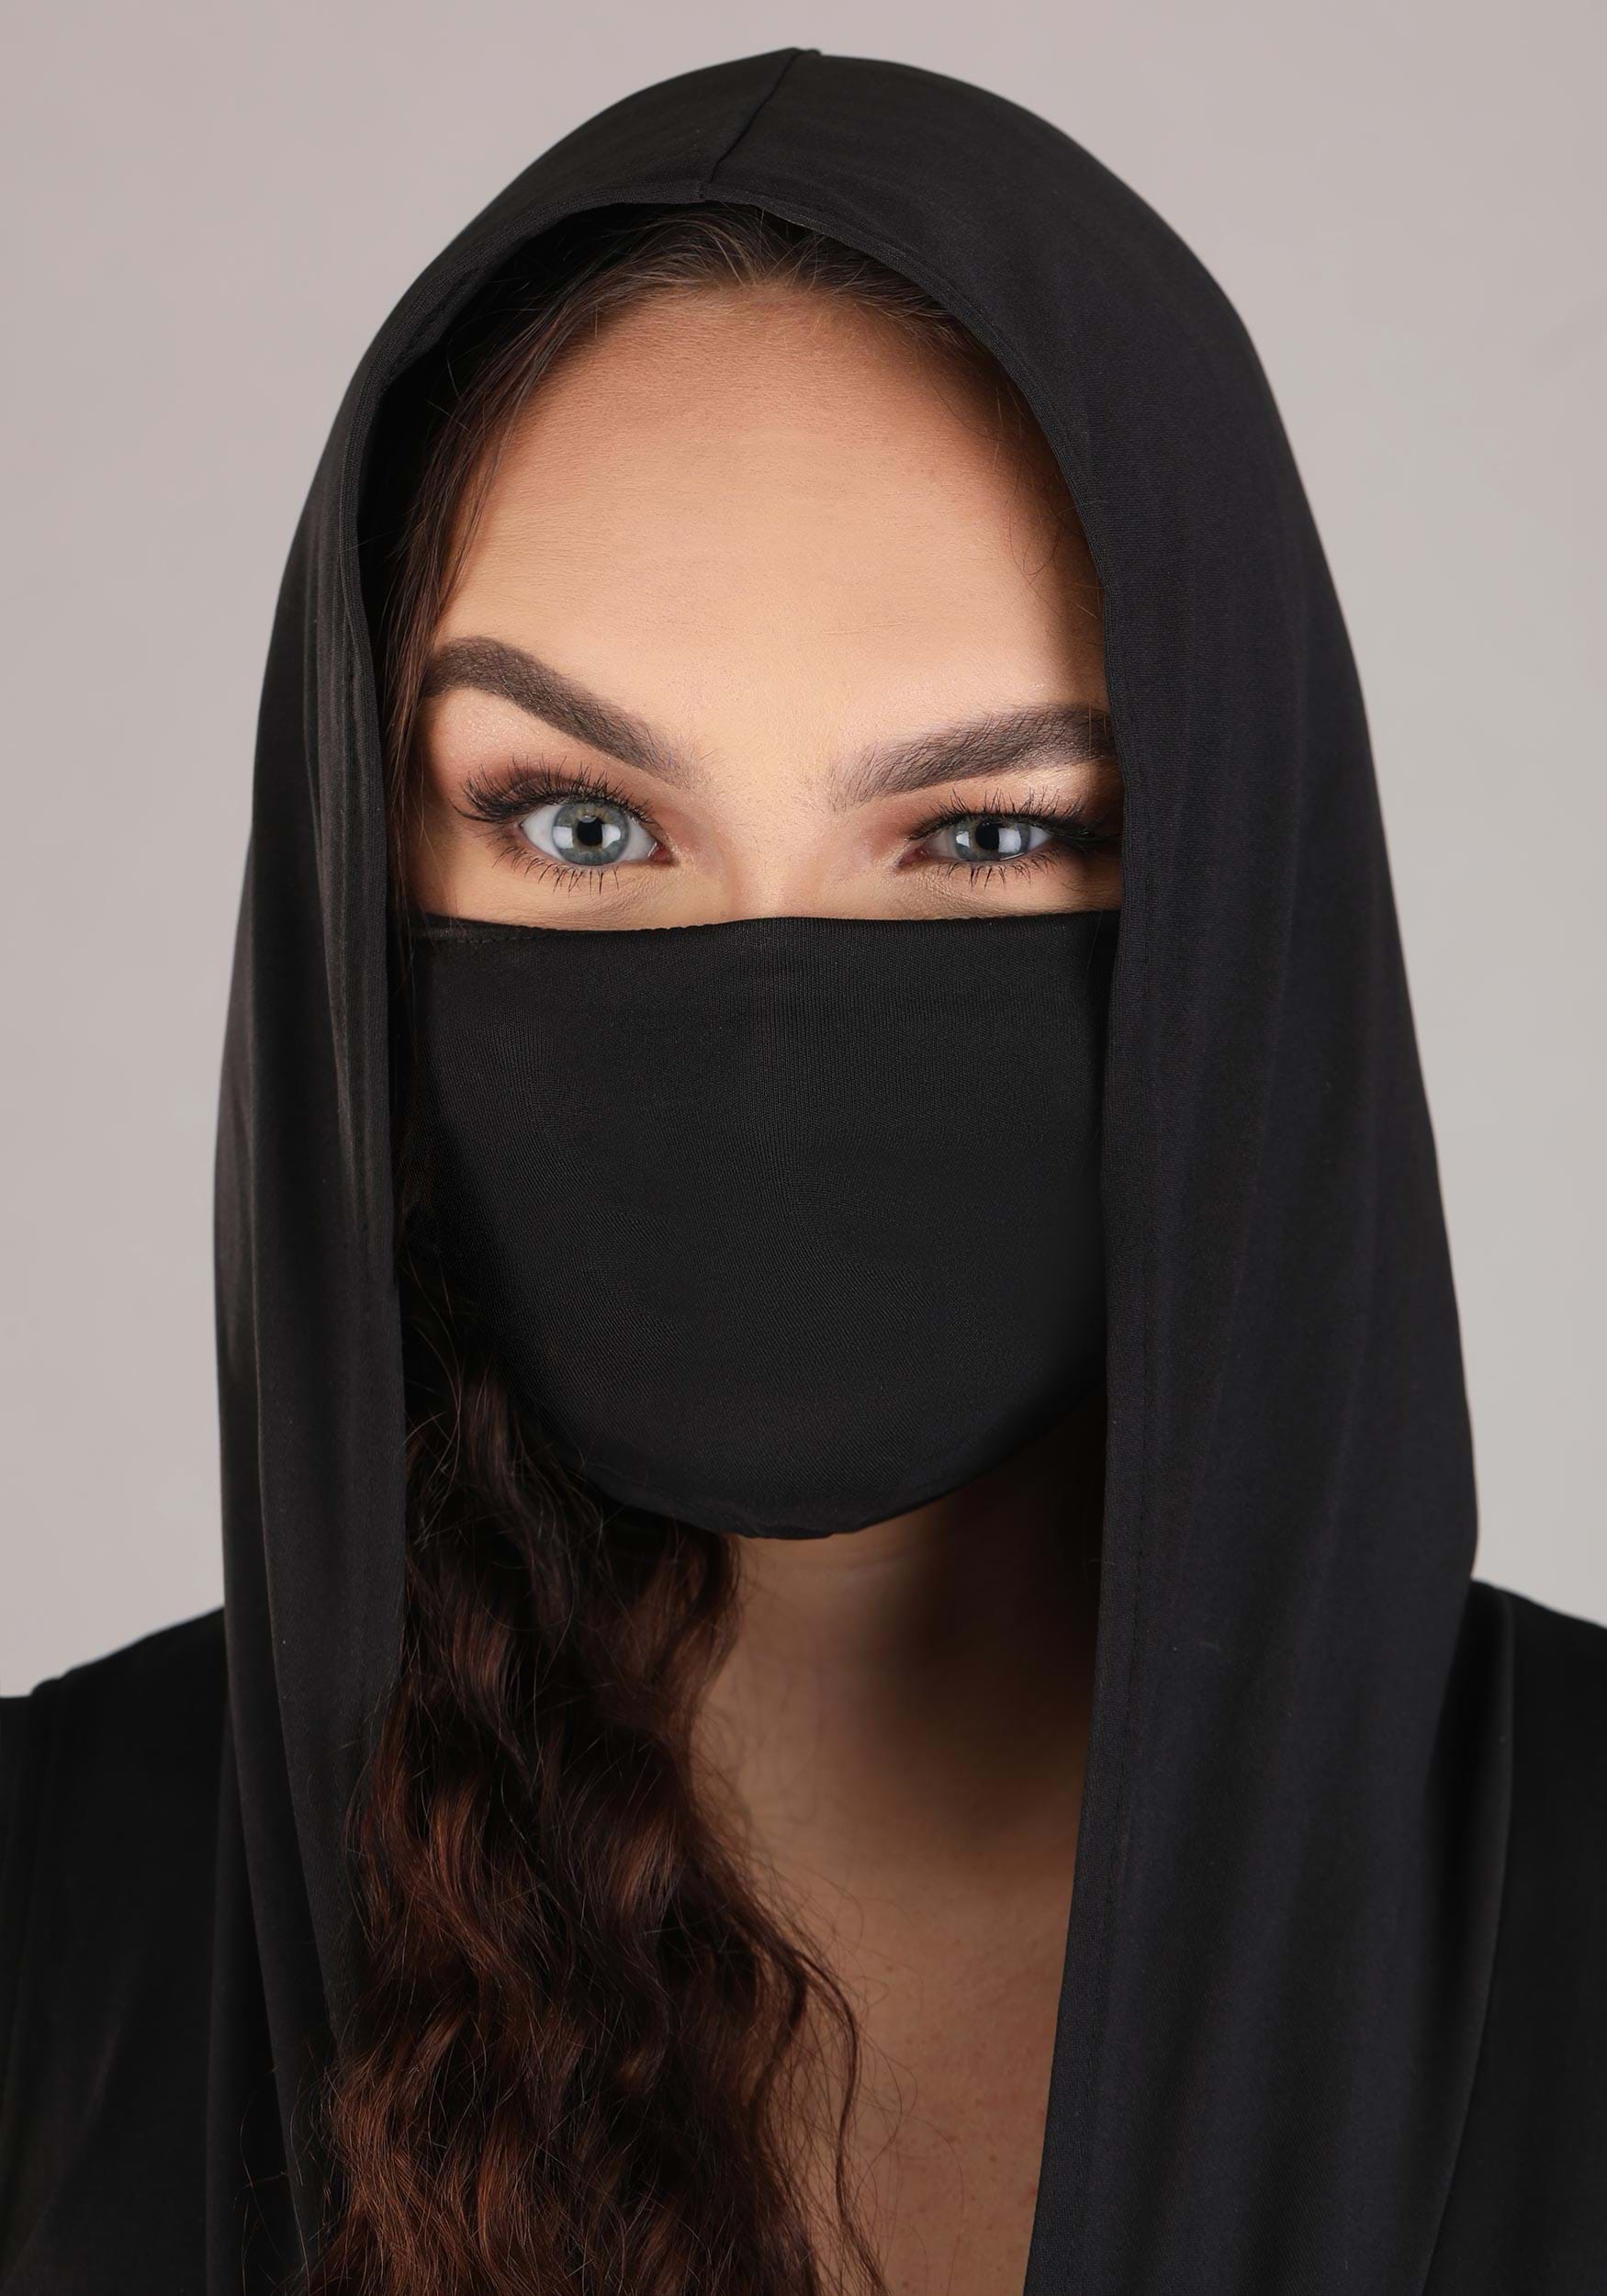 Sexy Deadly Ninja Fancy Dress Costume For Women